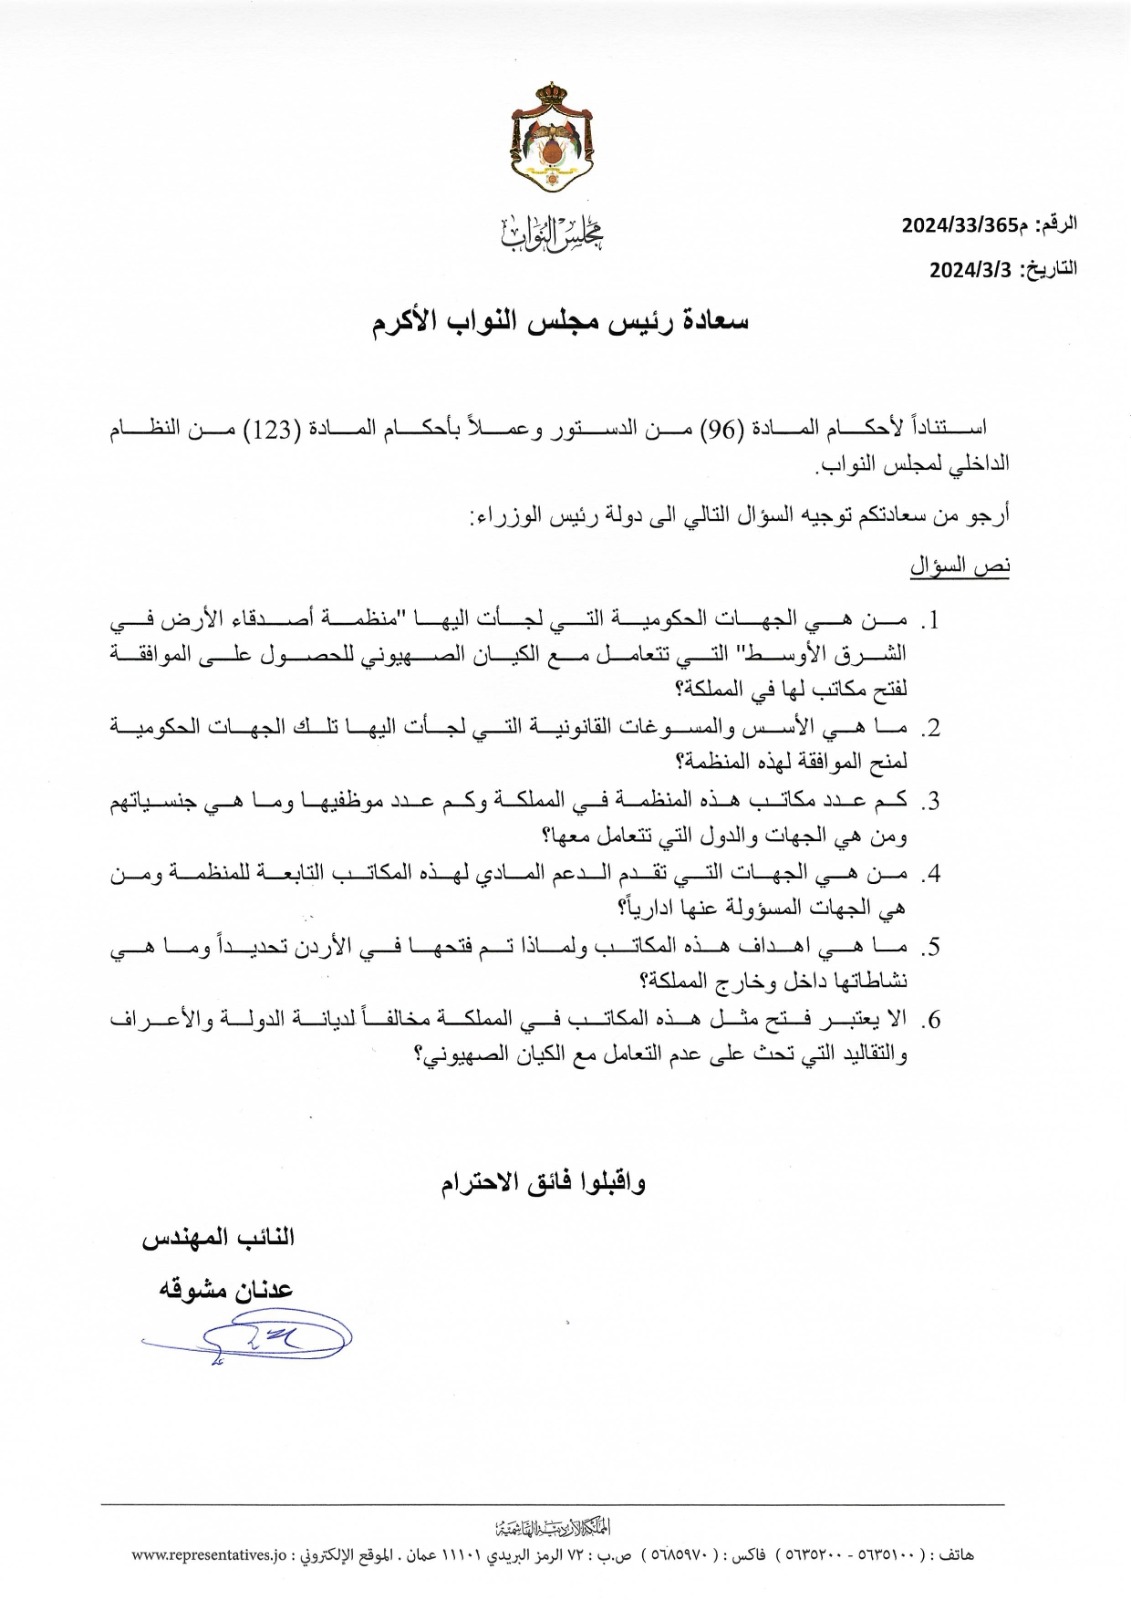 النائب عدنان مشوقة يُسائل رئيس الحكومة حول آلية منح منظمة أصدقاء الأرض في الشرق الأوسط الموافقات لفتح مكاتبها في الأردن